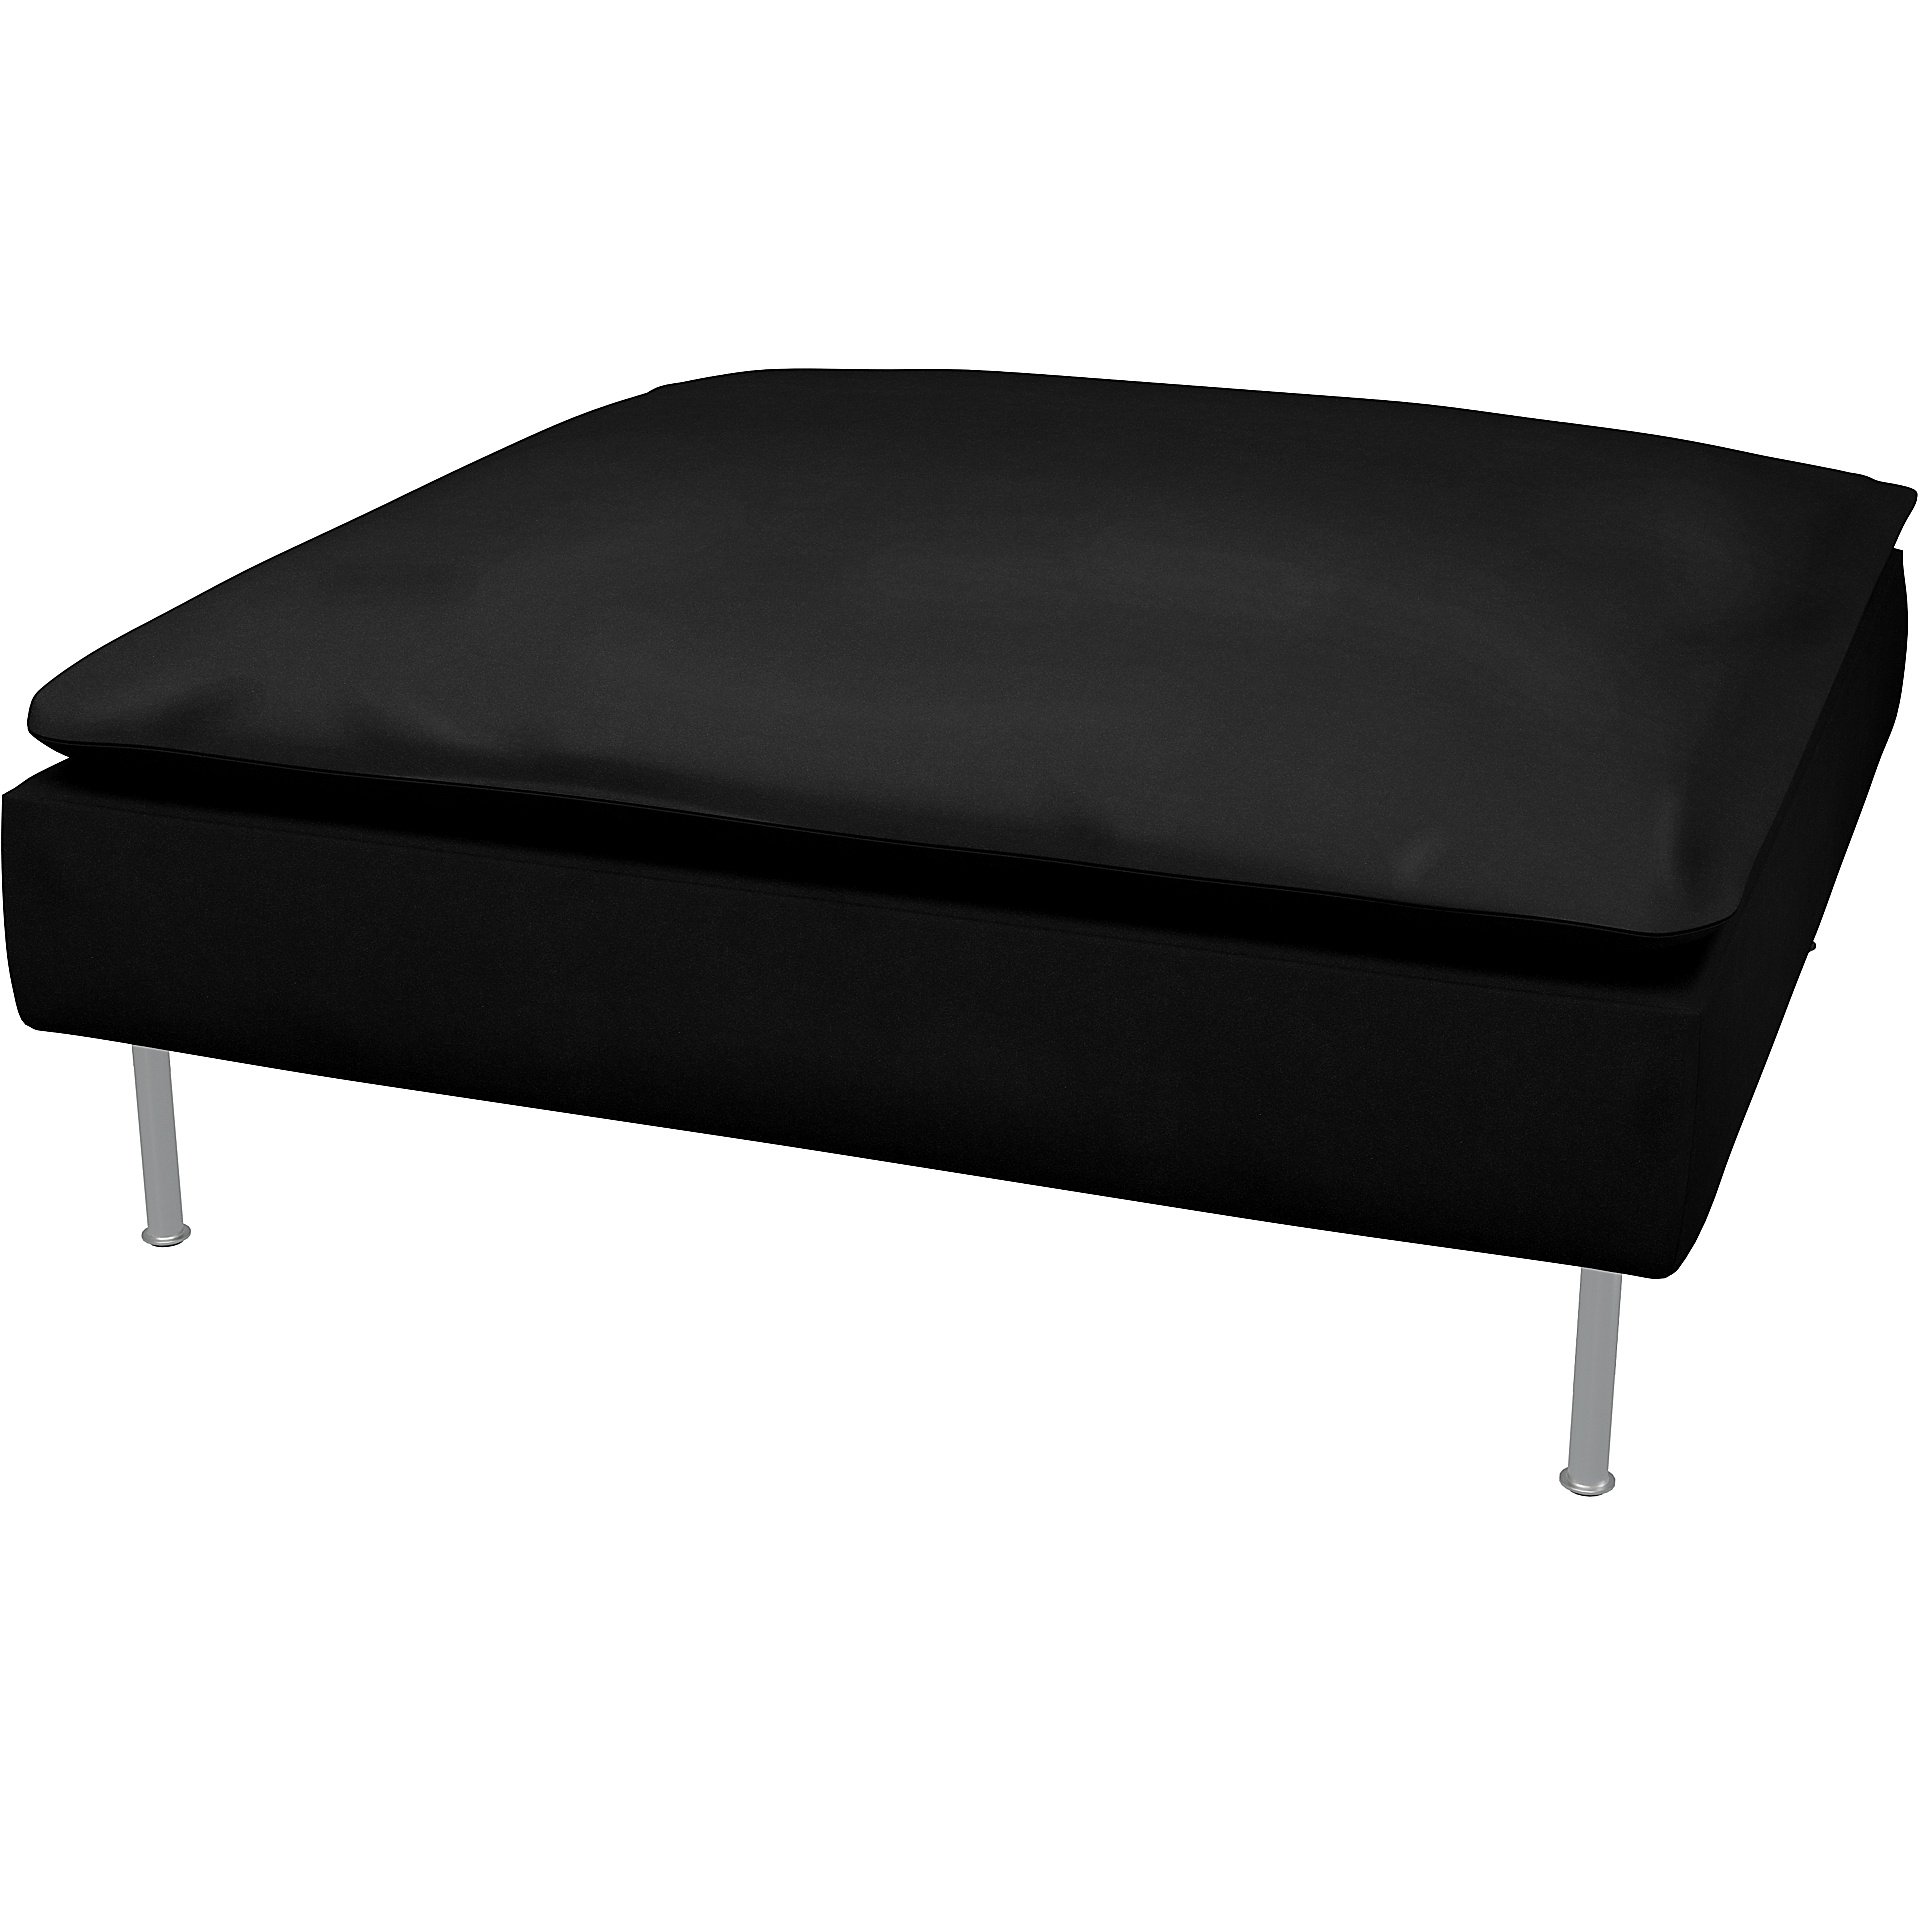 IKEA - Soderhamn Footstool Cover, Black, Velvet - Bemz